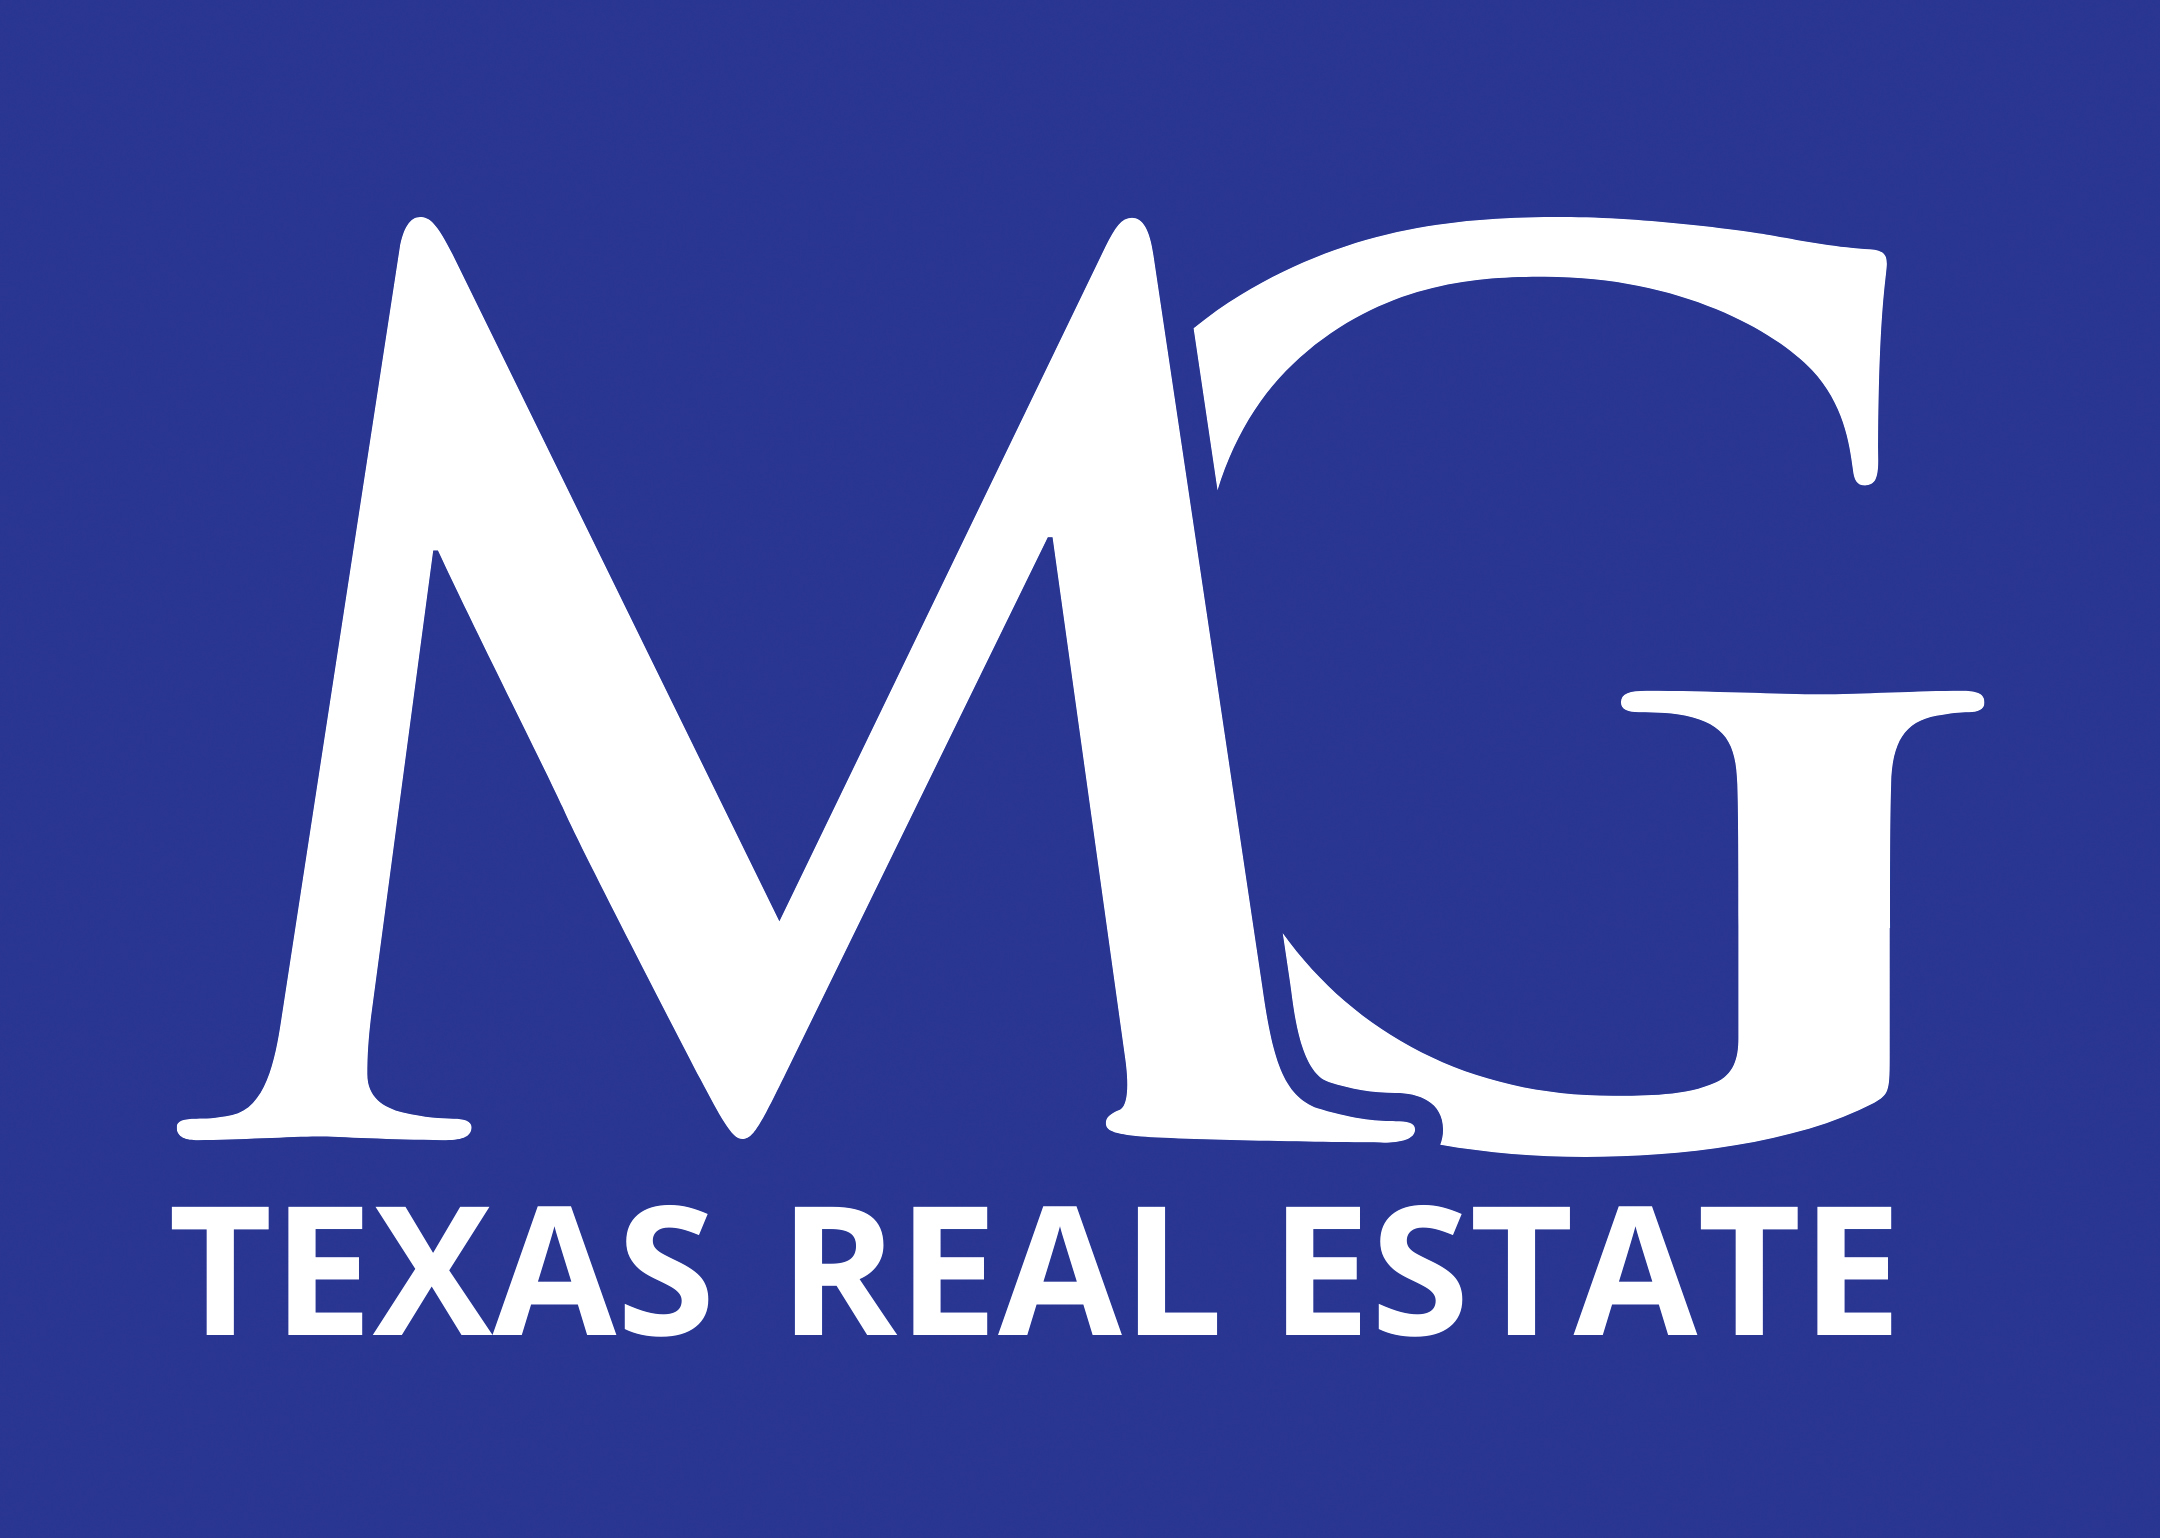 MG Texas Real Estate